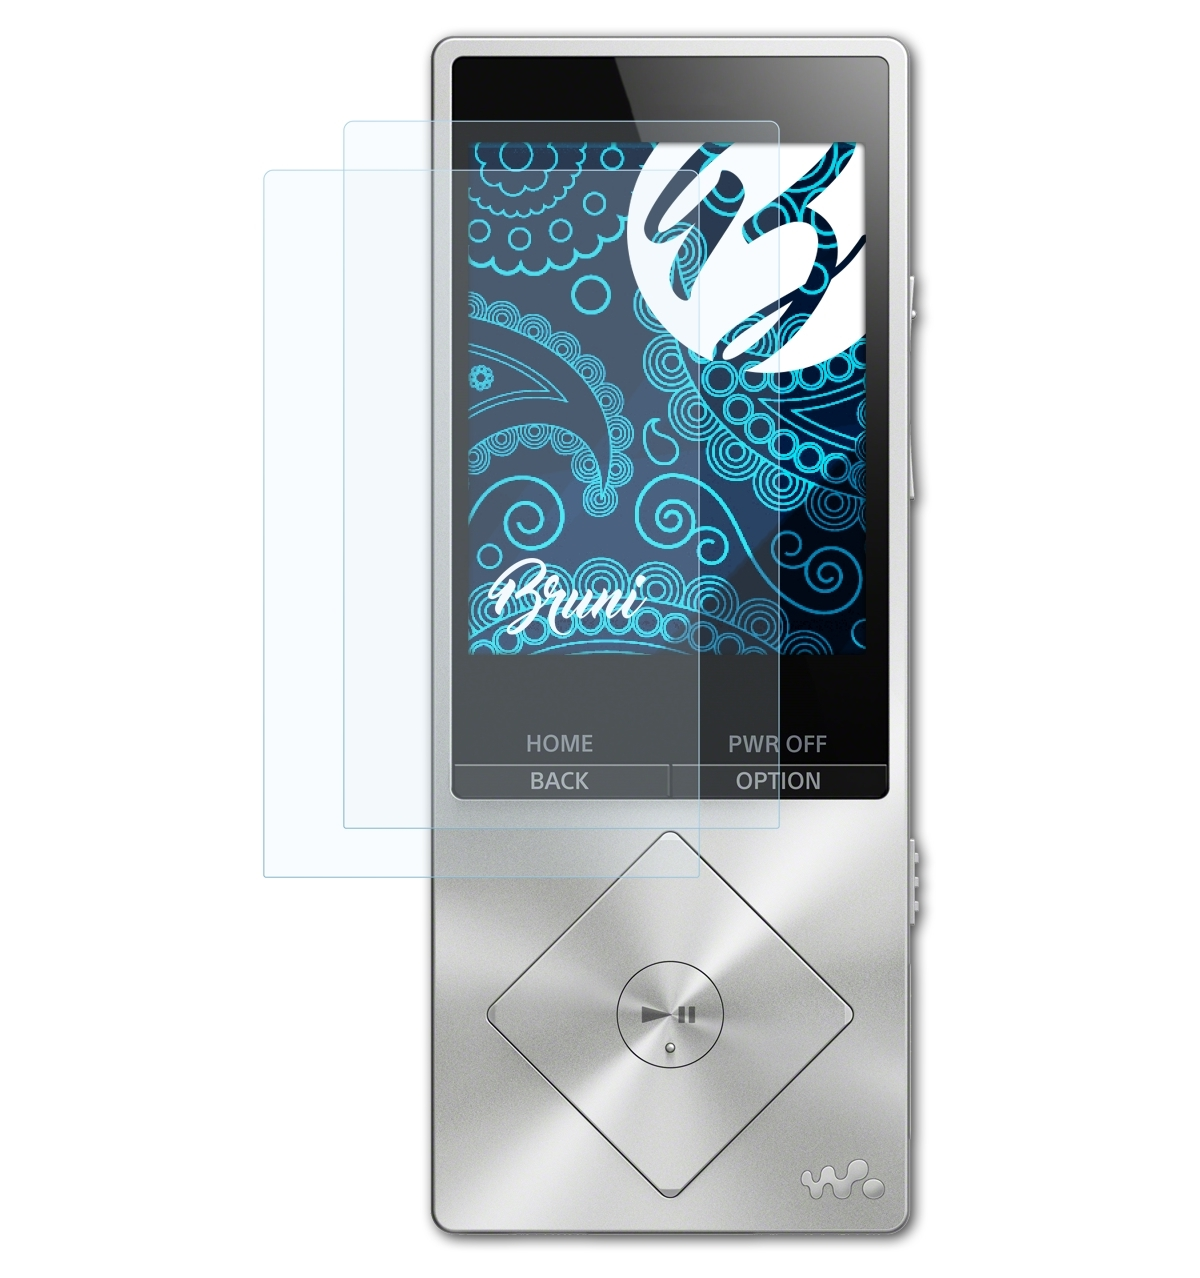 BRUNI 2x Basics-Clear Schutzfolie(für Sony NWZ-A15) Walkman